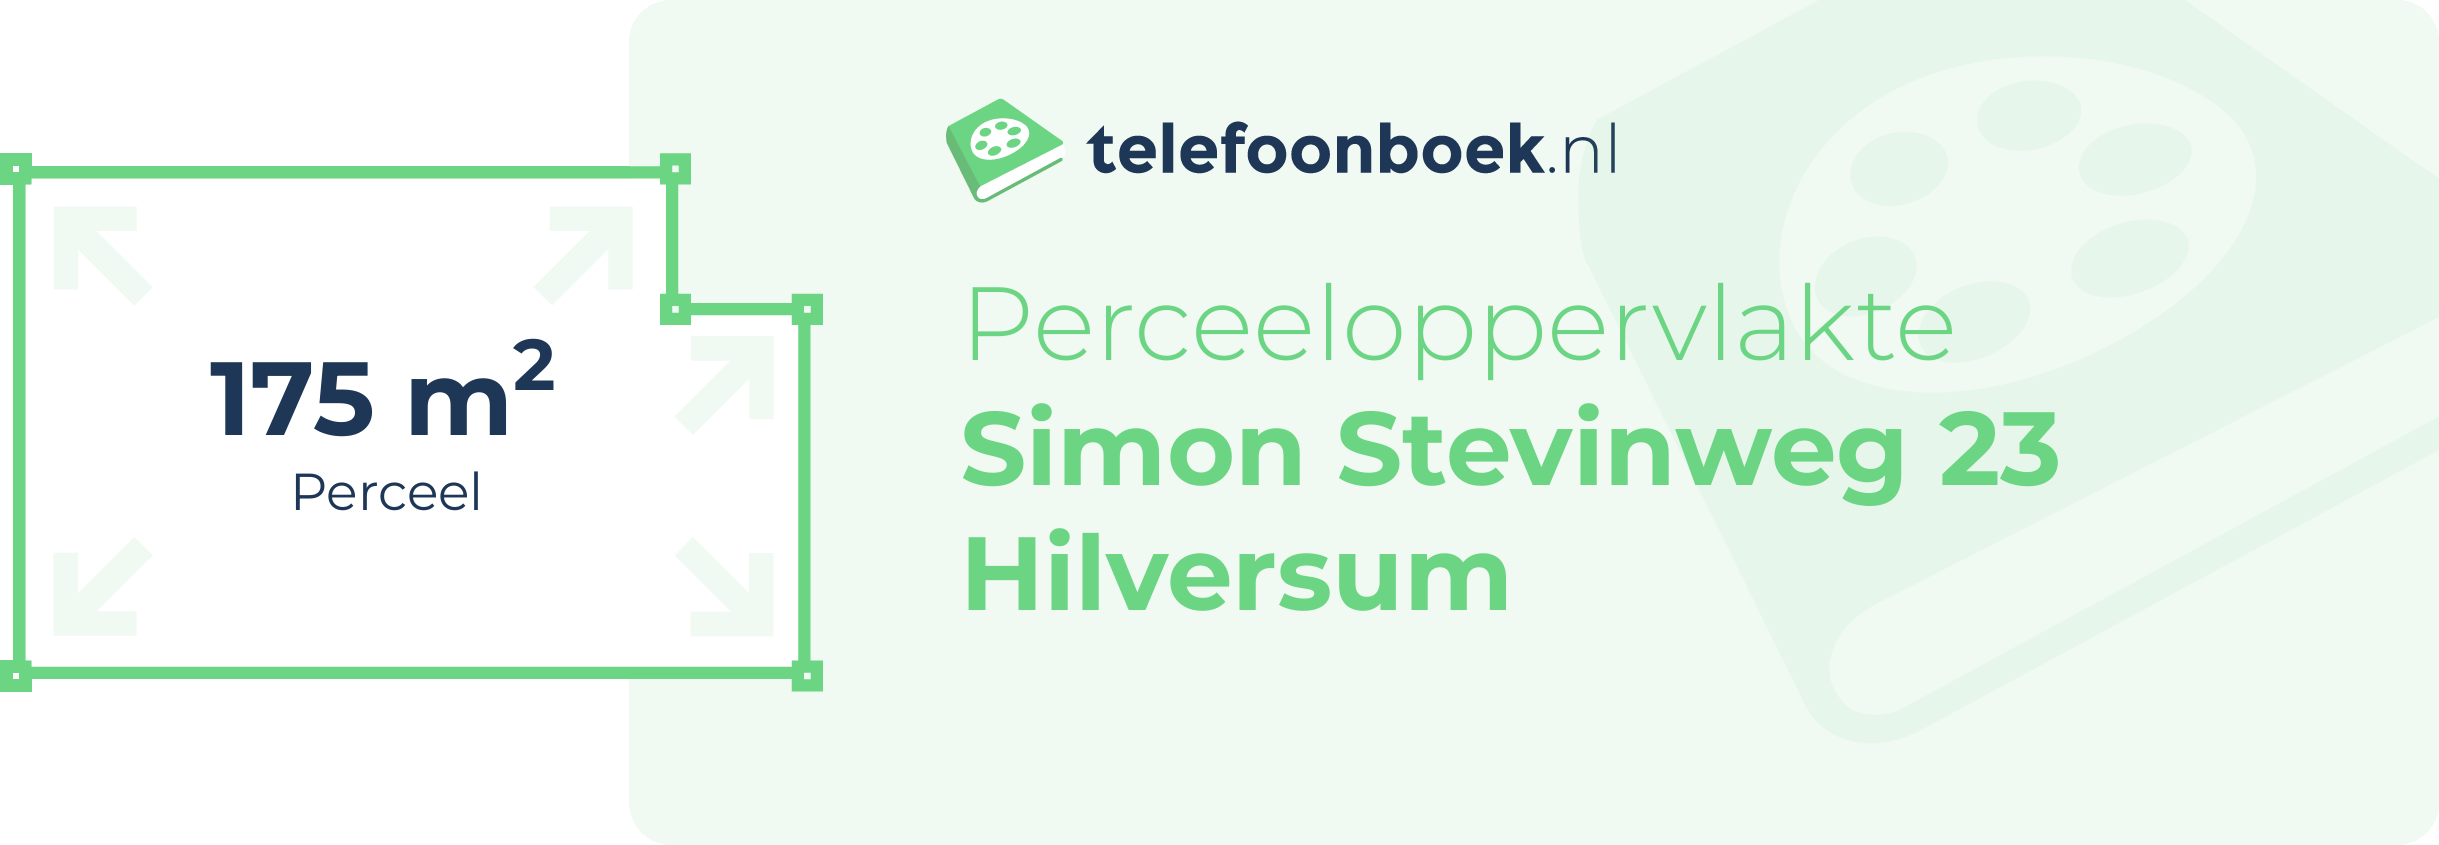 Perceeloppervlakte Simon Stevinweg 23 Hilversum